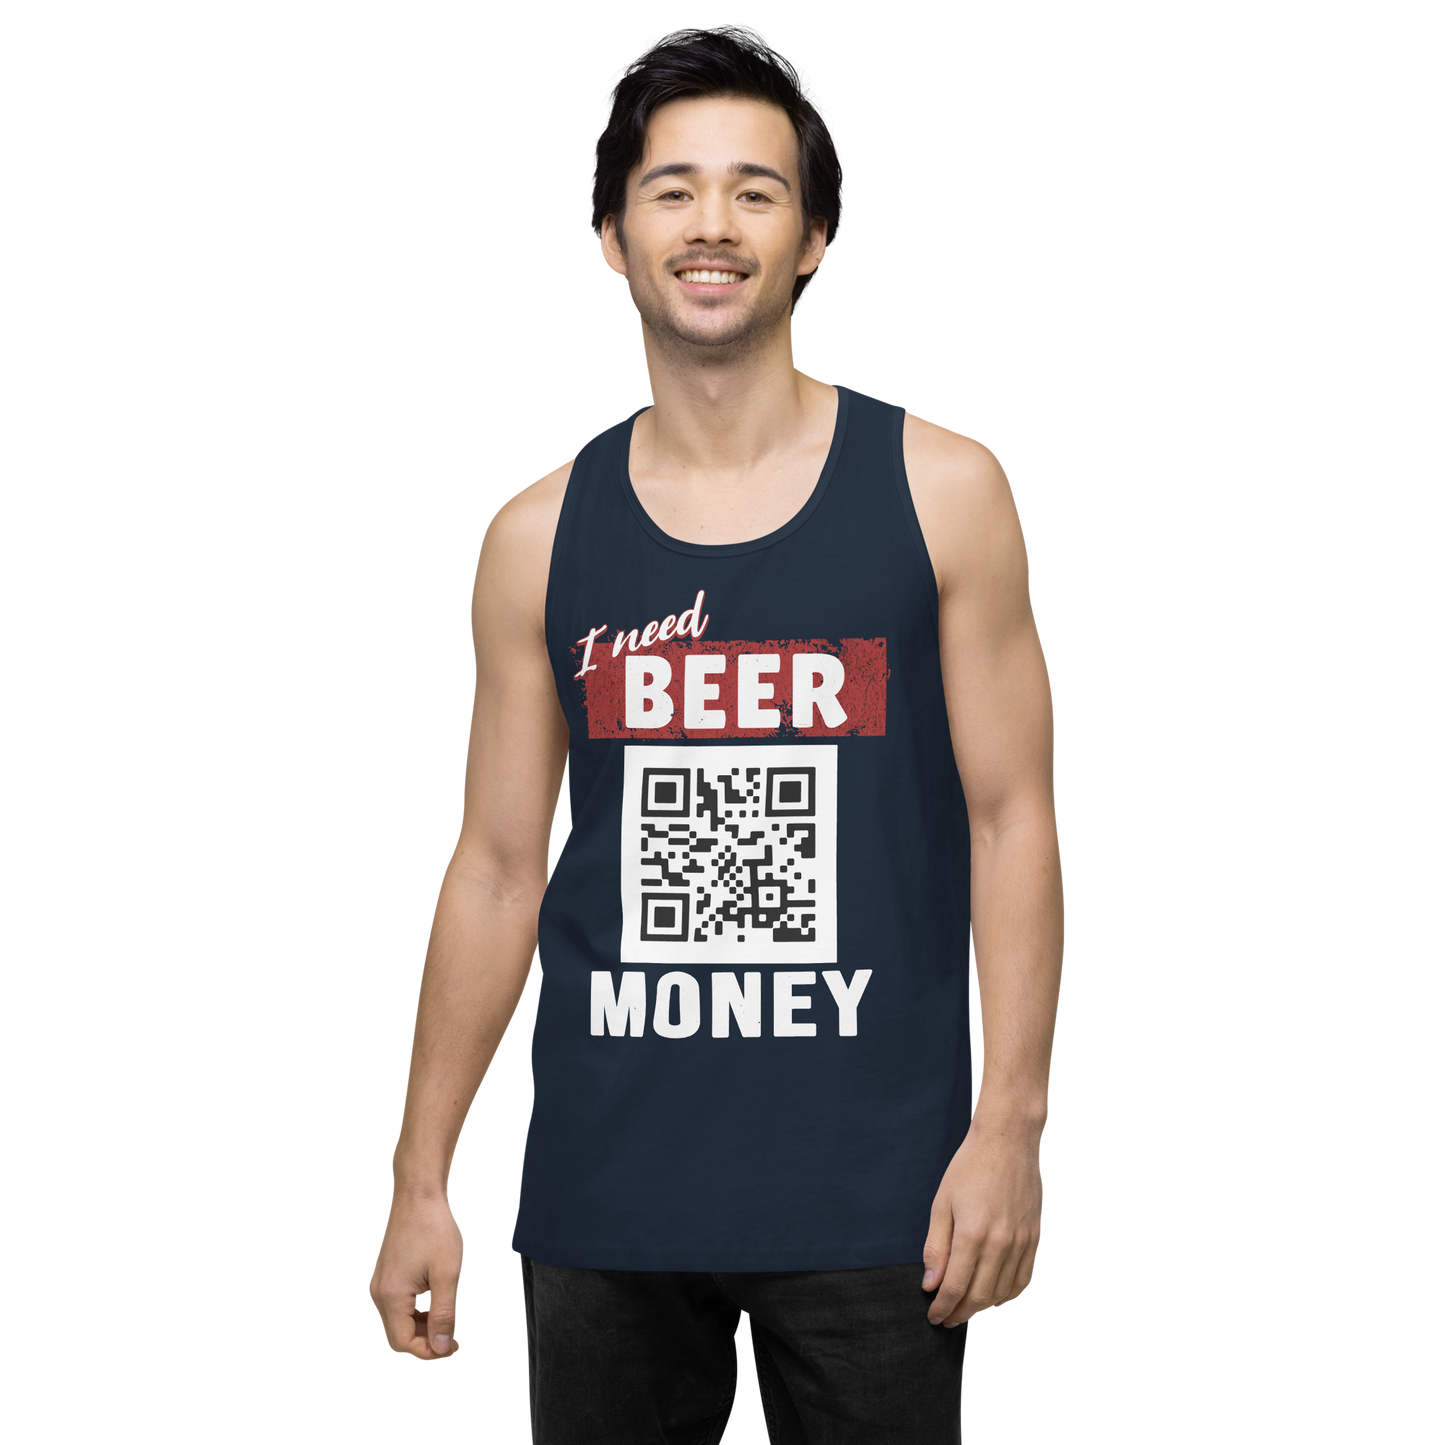 I Need Beer Money Men's Tank Top - Personalizable